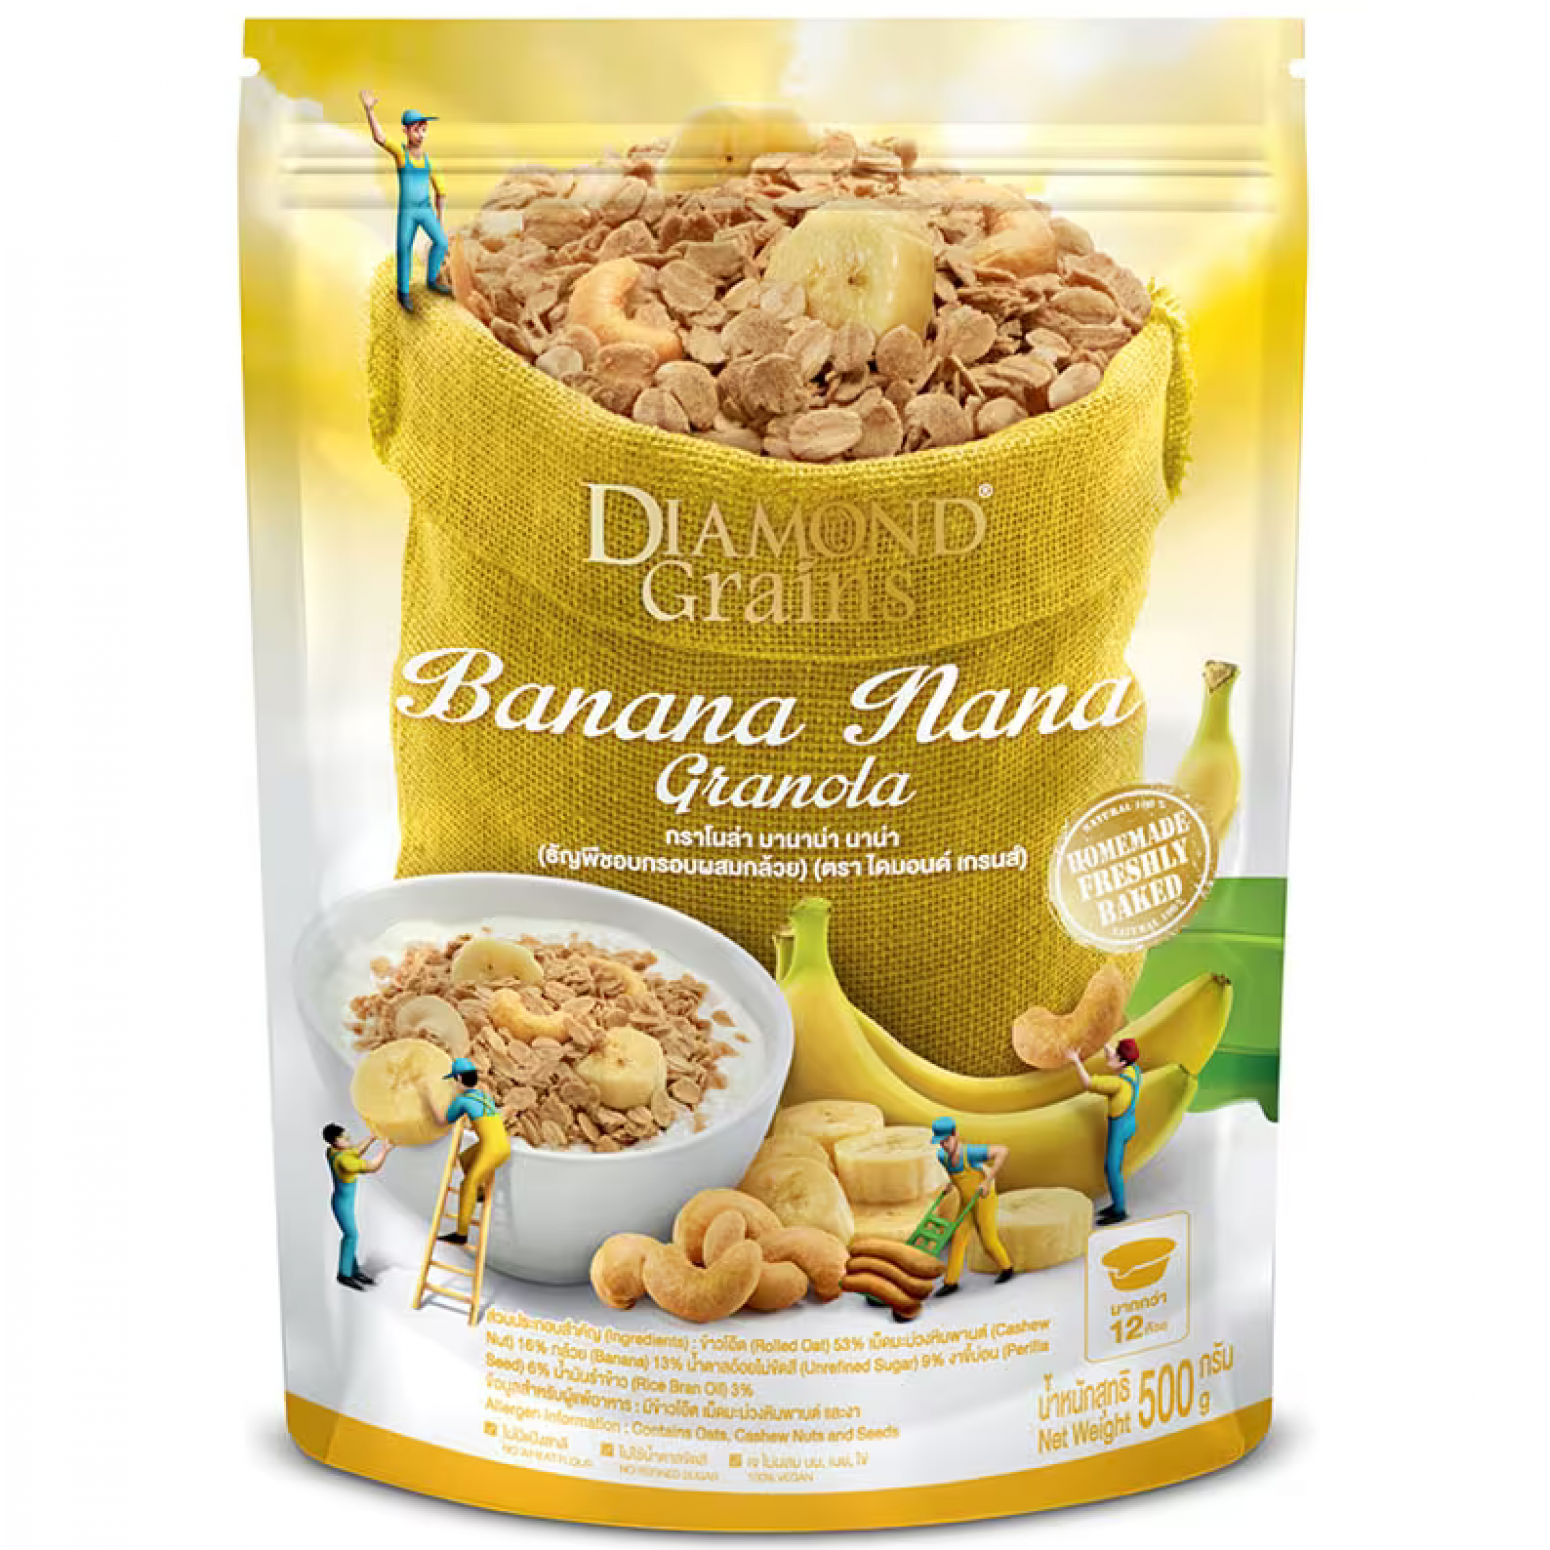 Diamond Grains Banana Nana Granola 220g.